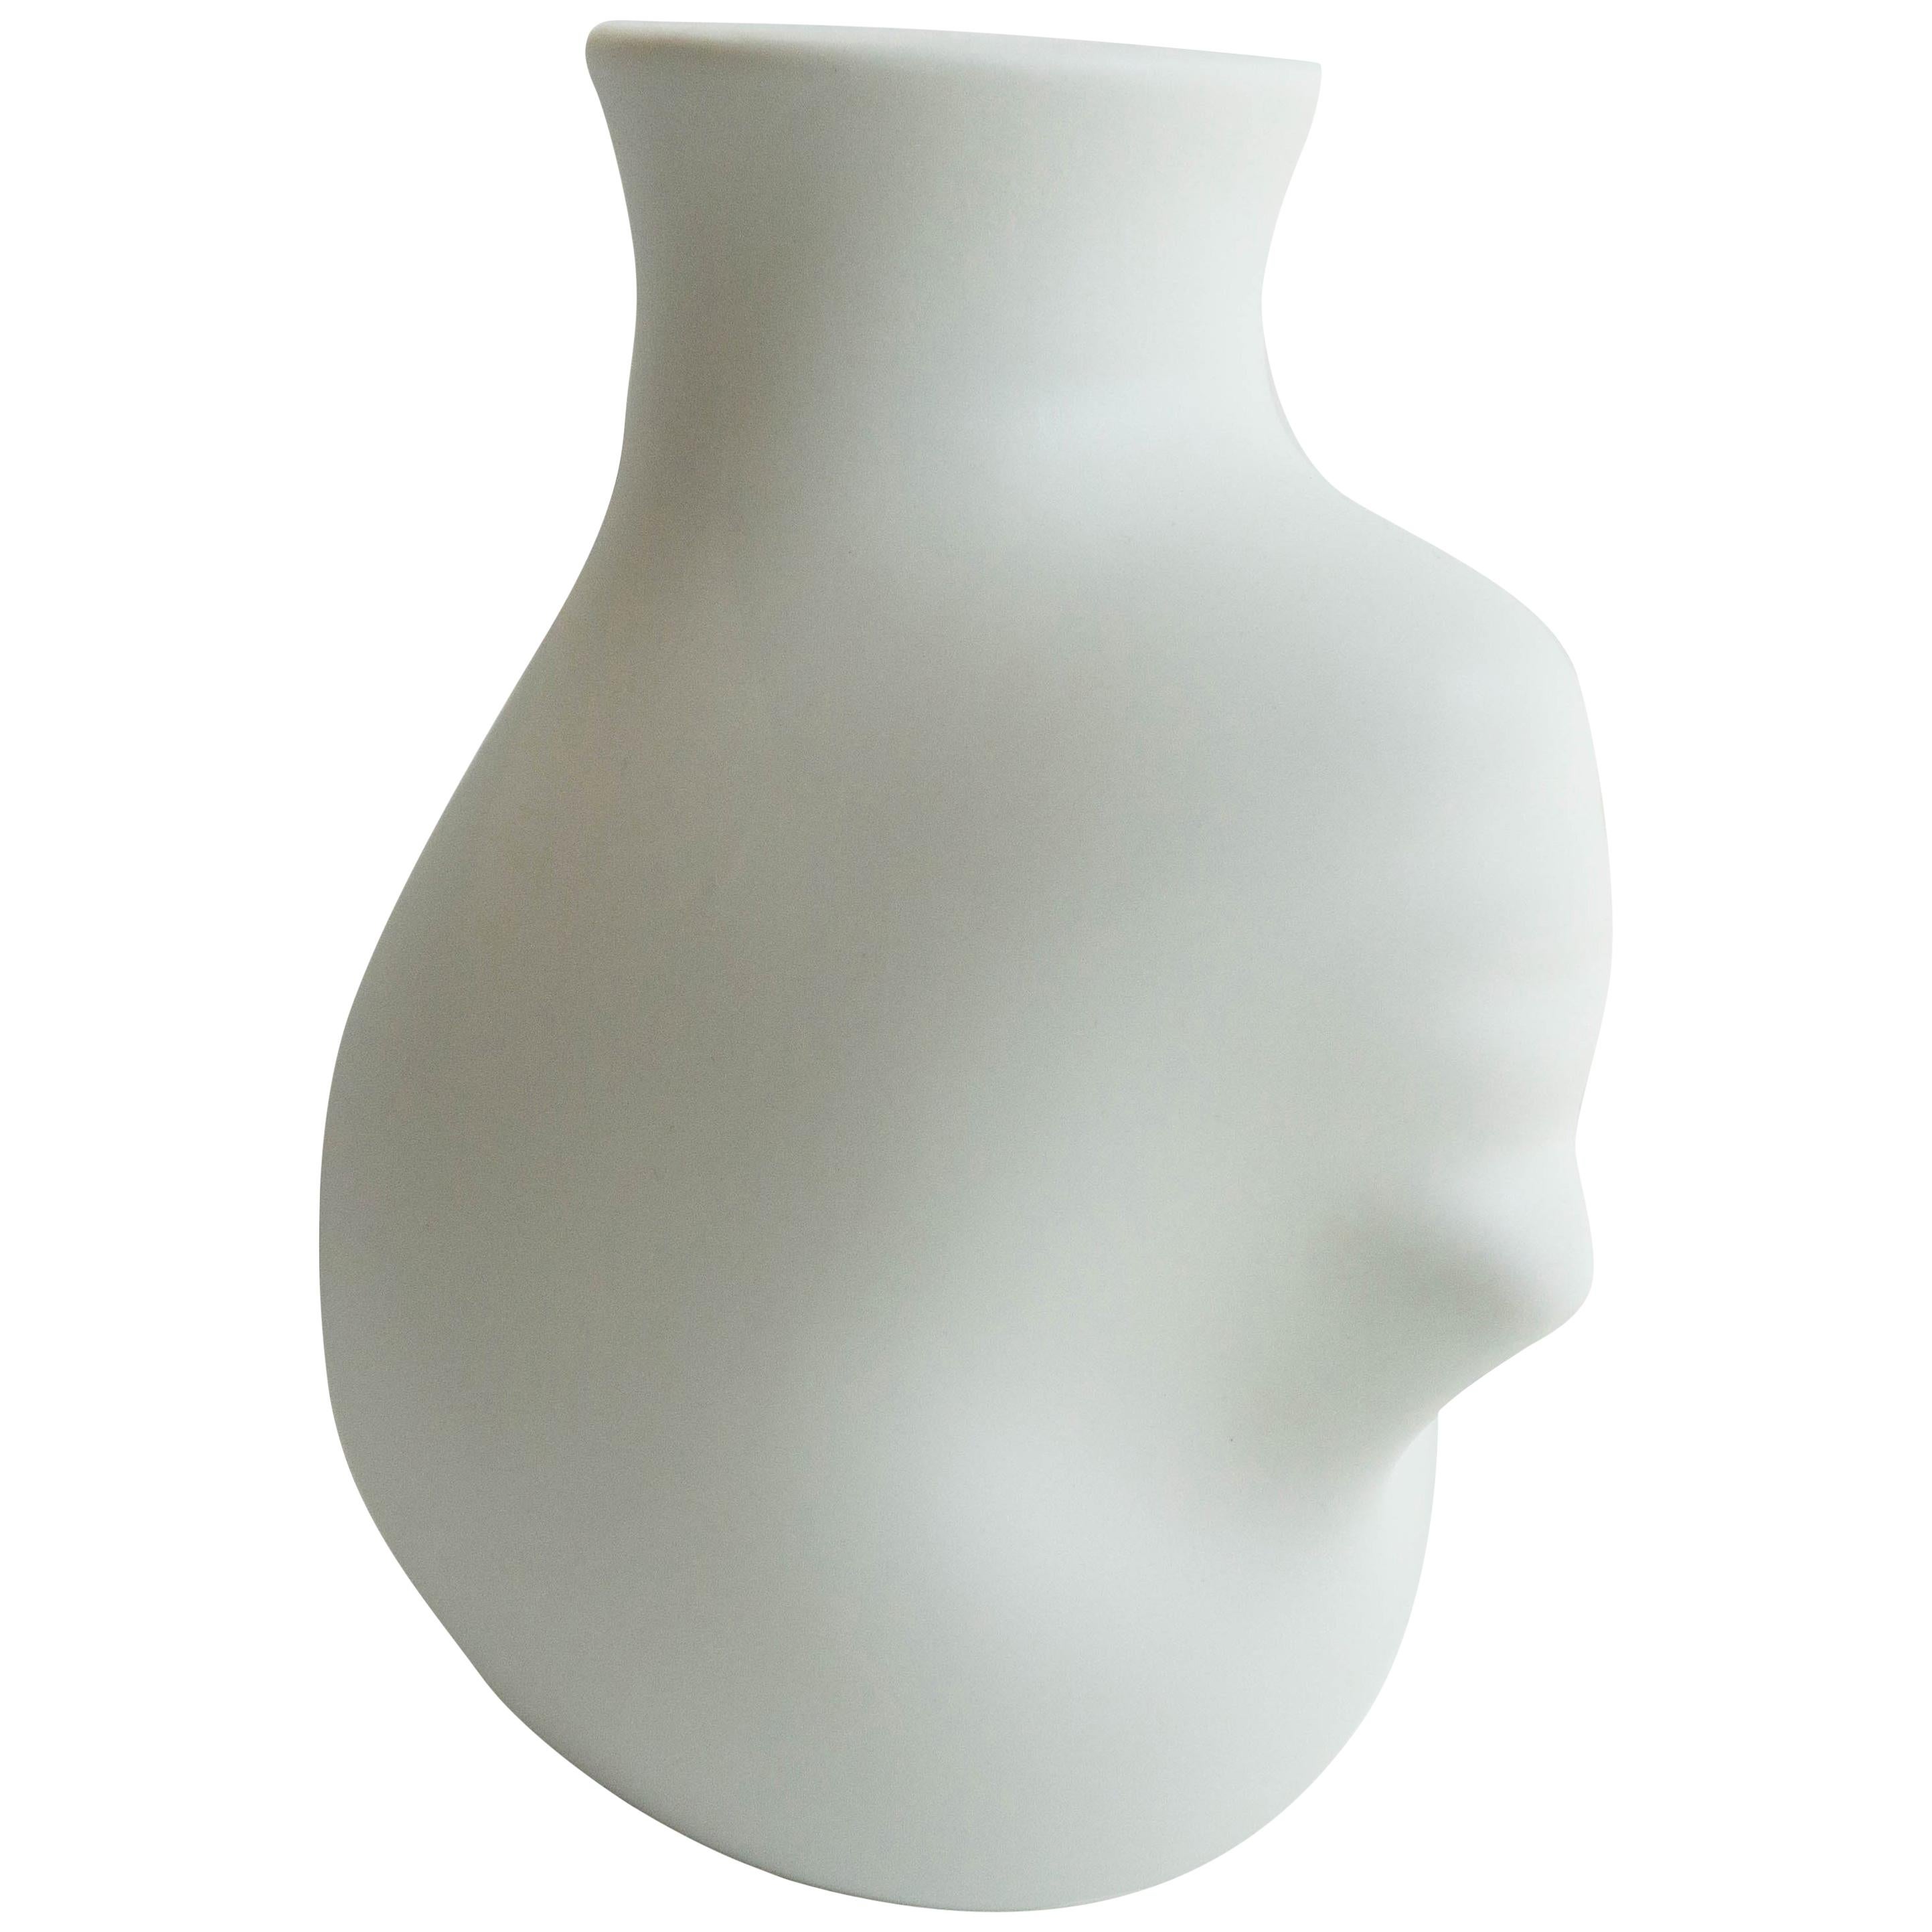 Upside Down Head Porcelain Vase 